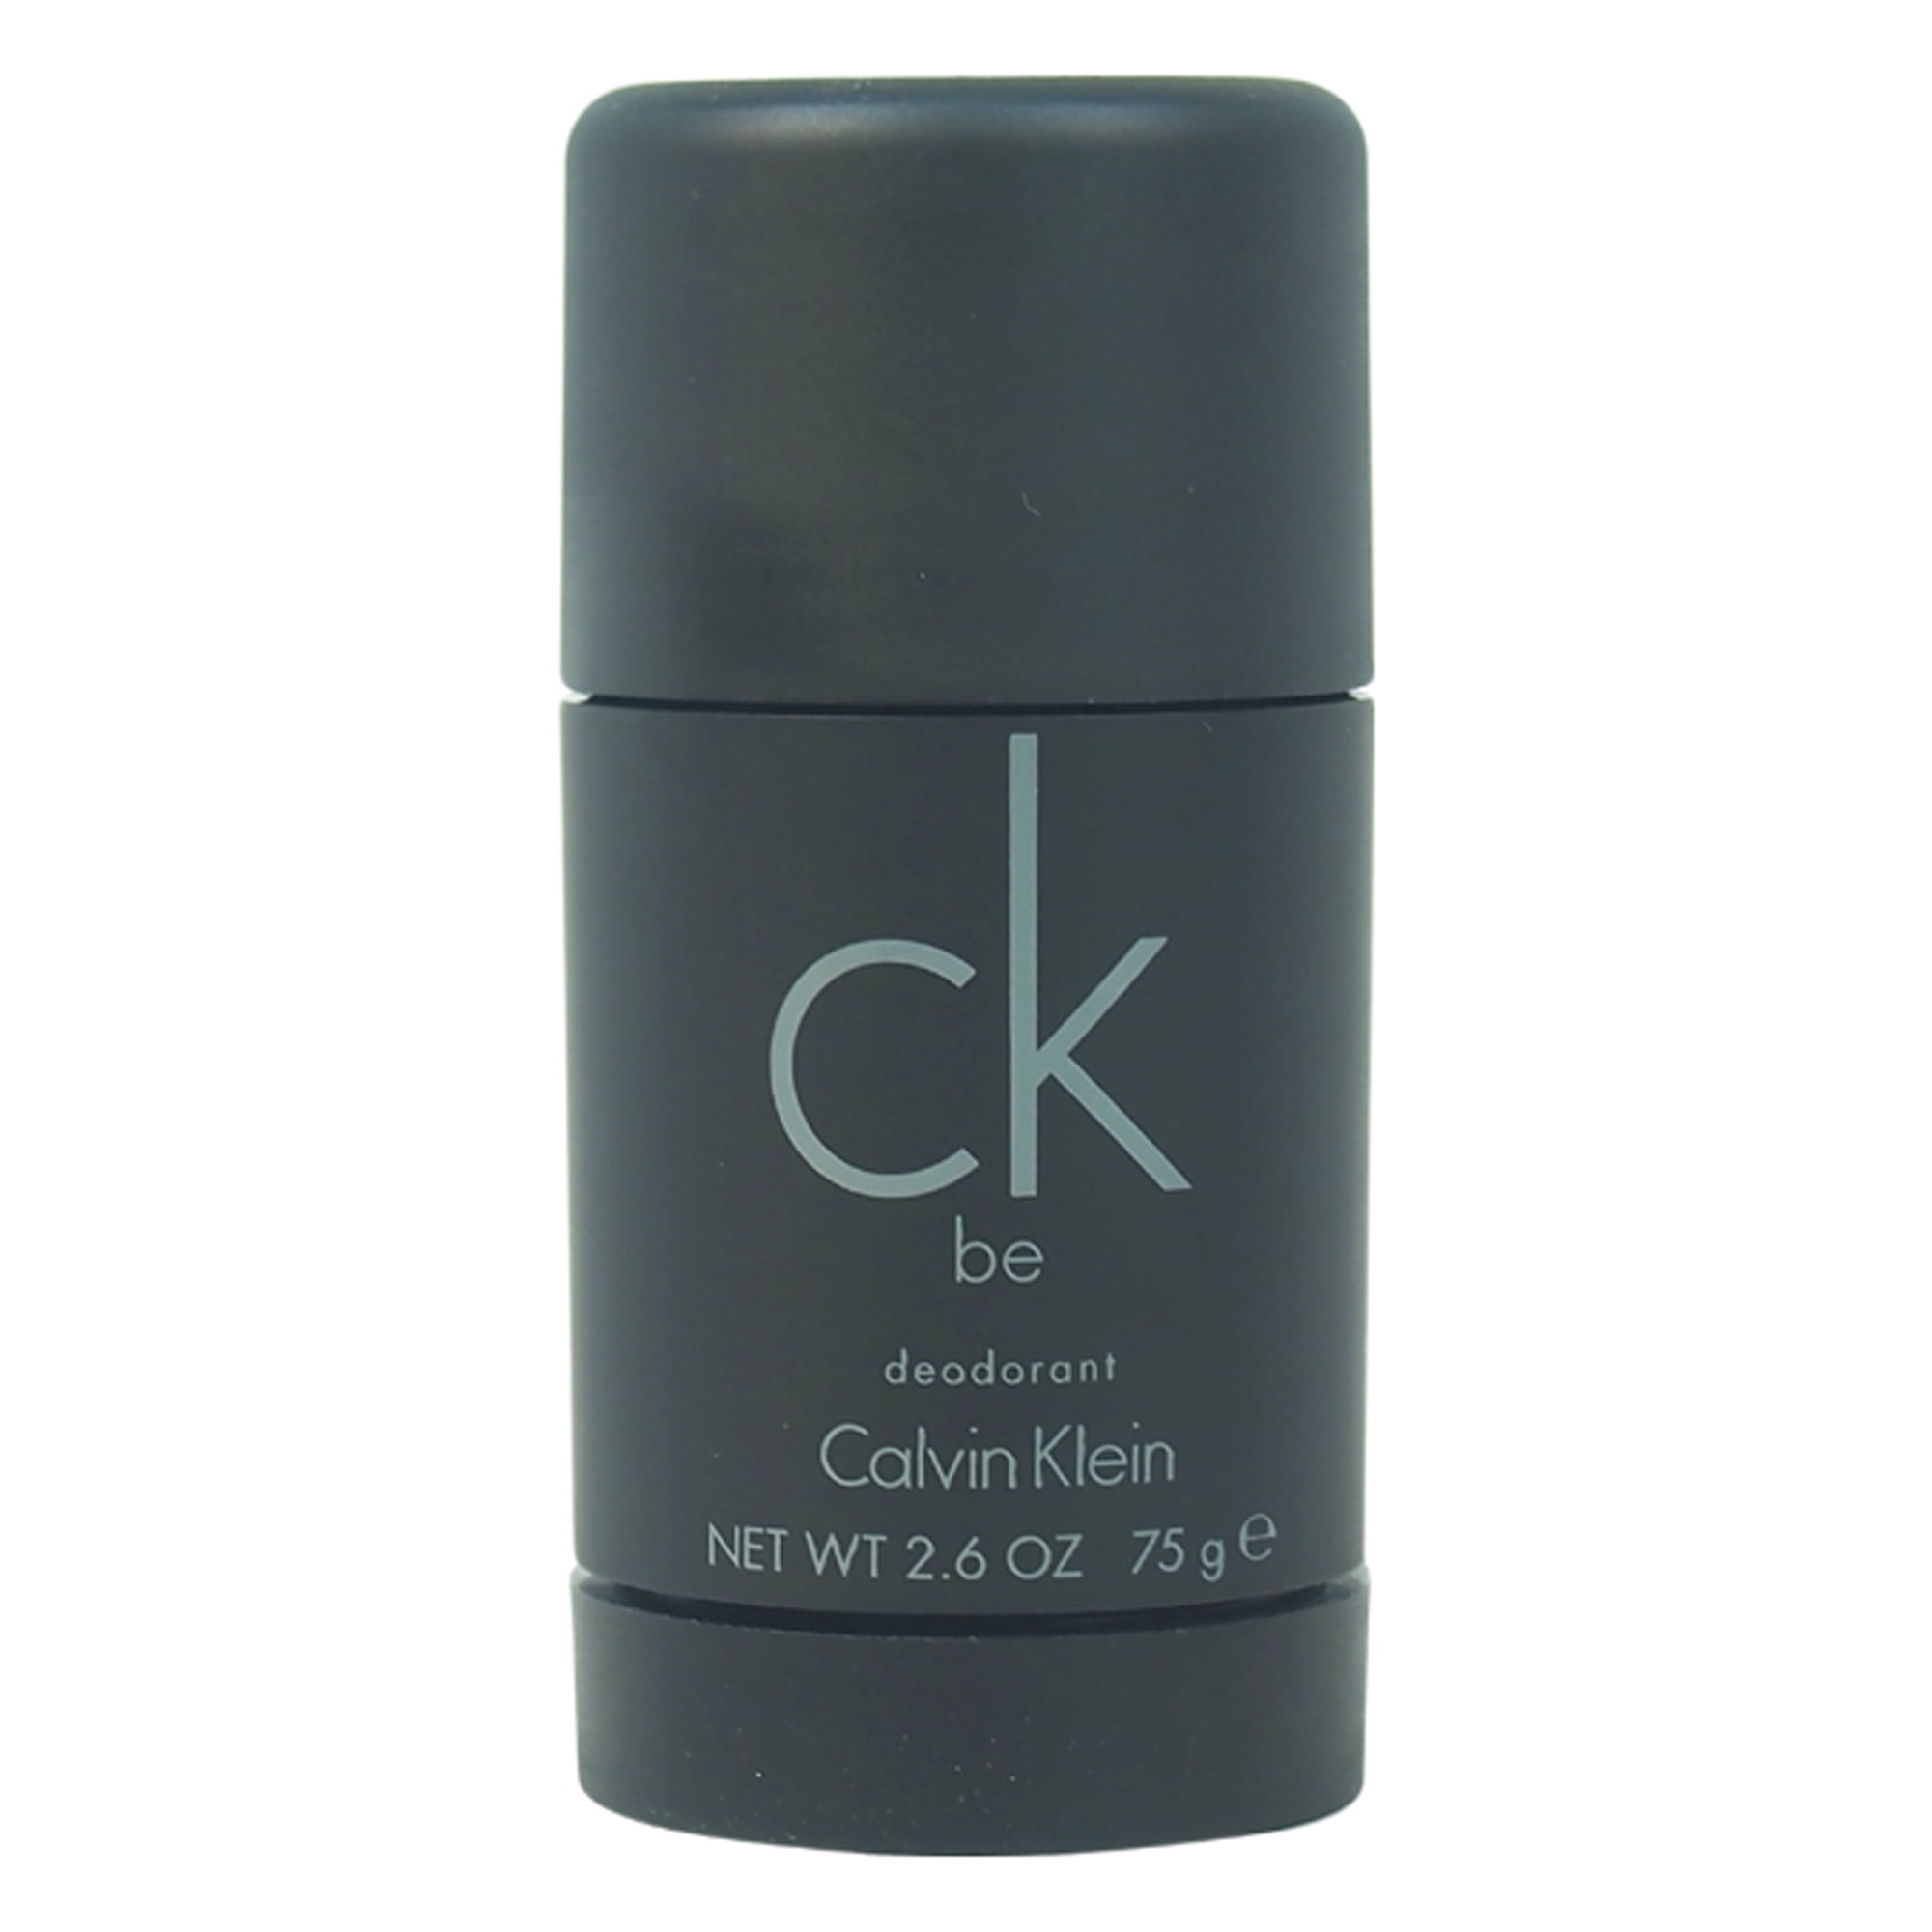 CK BE by Calvin Klein Unisex Deodorant Stick, 2.6 Oz